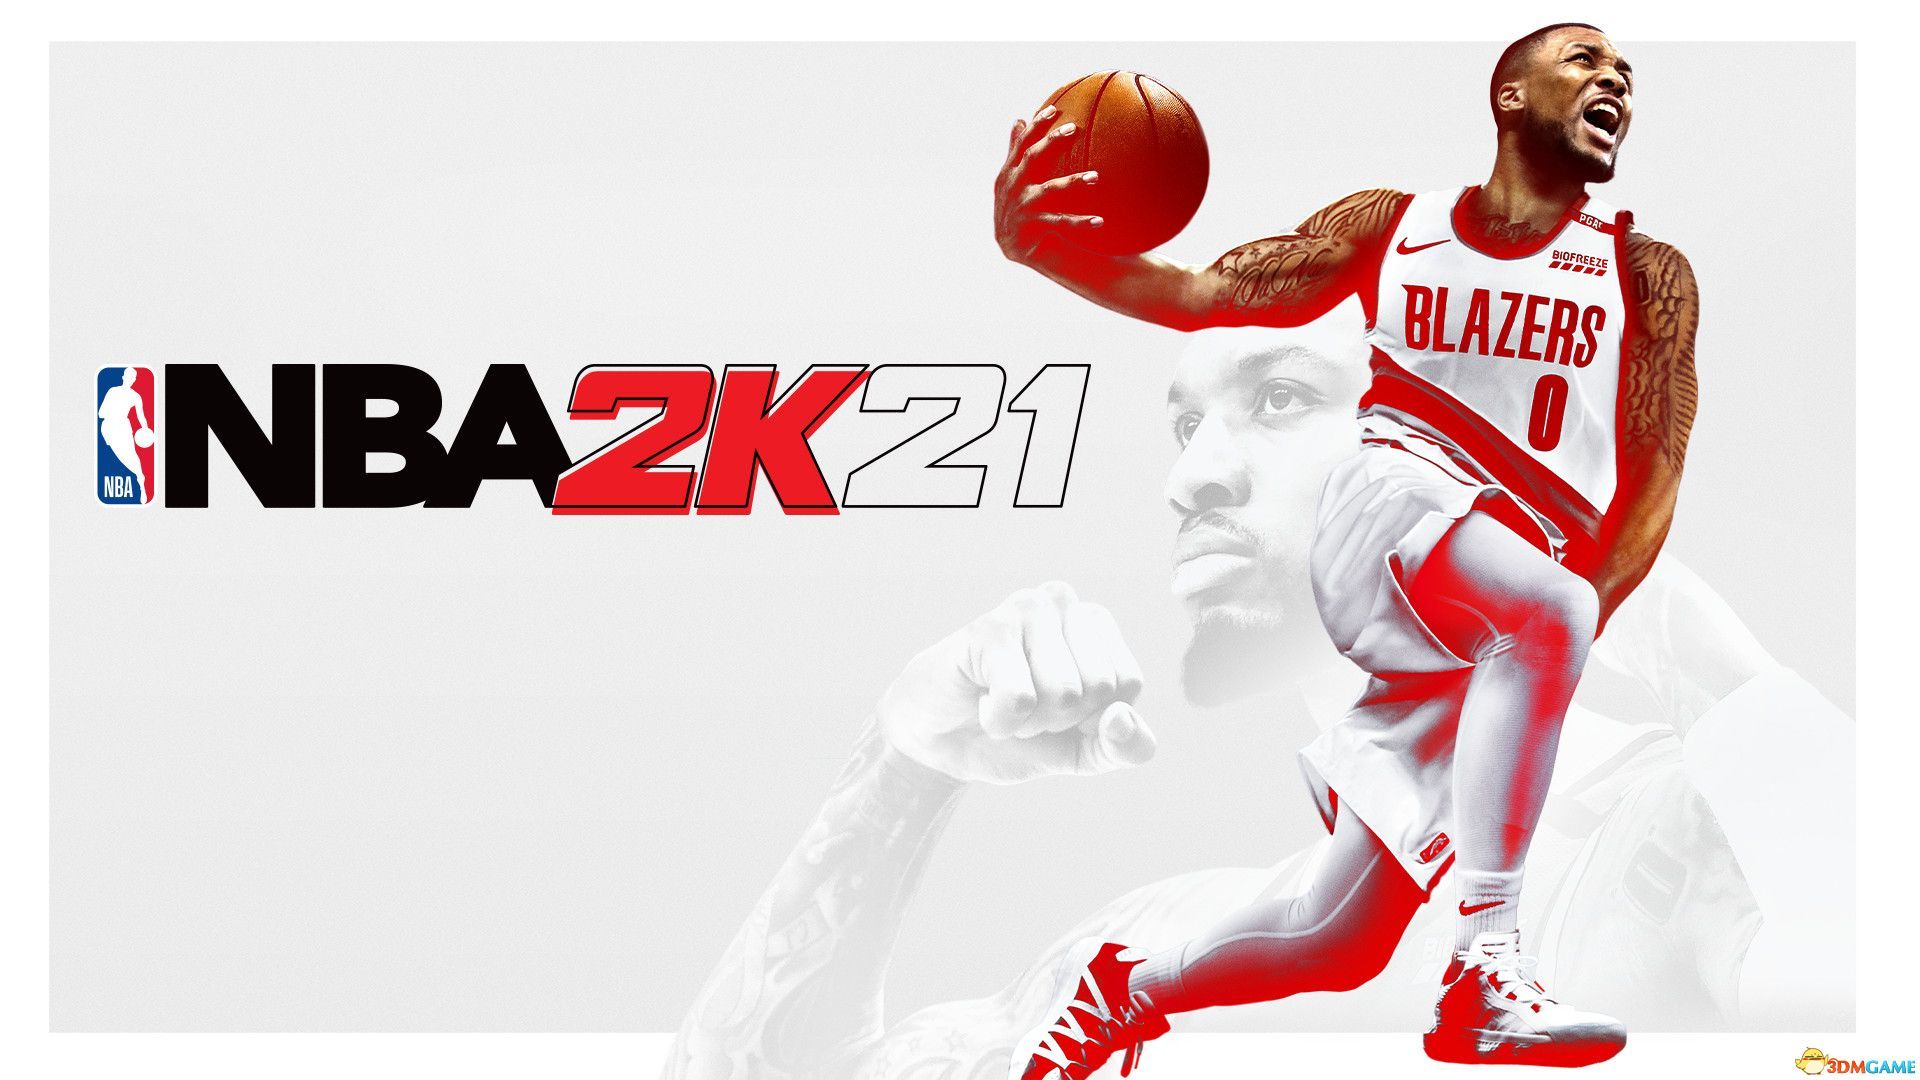 《NBA2K21》新增內容及改動內容詳解 操作技巧及玩法心得總匯